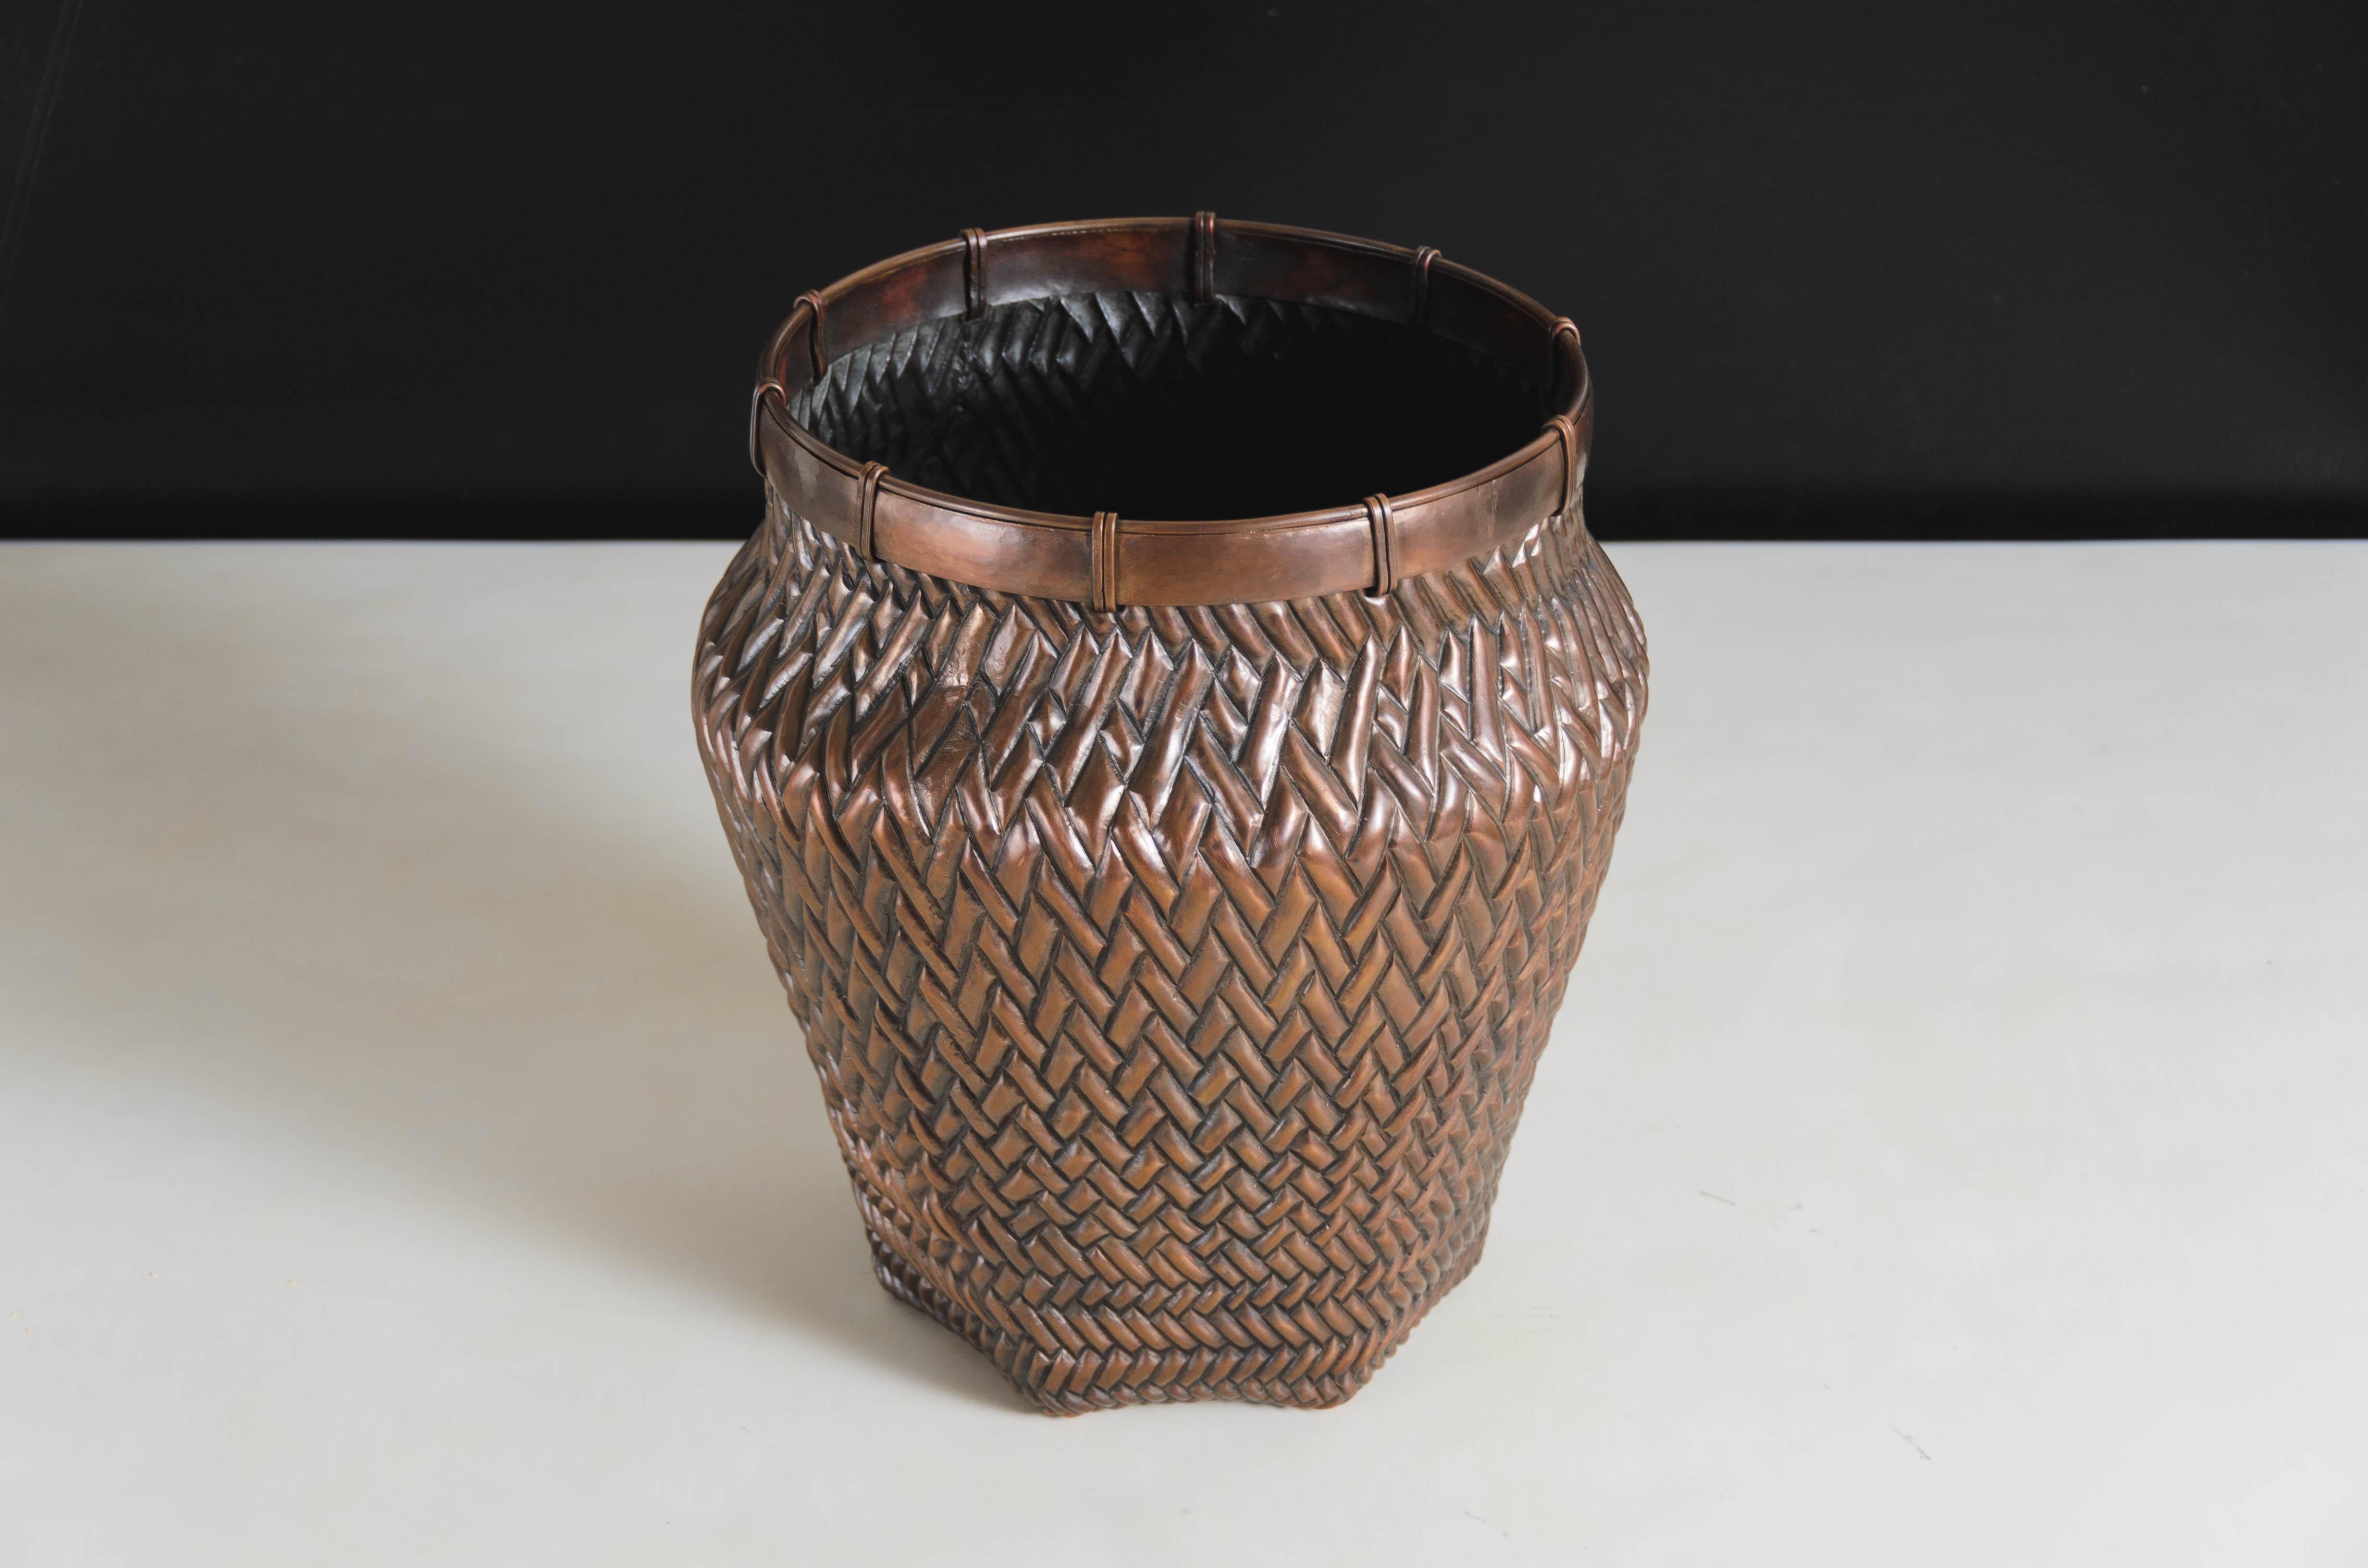 Vase à motif de tissage
Cuivre antique
Repoussé à la main
Edition limitée
Chaque pièce est fabriquée individuellement et est unique. 
Utilisez la doublure pour les compositions florales
Le repoussé est l'art traditionnel qui consiste à